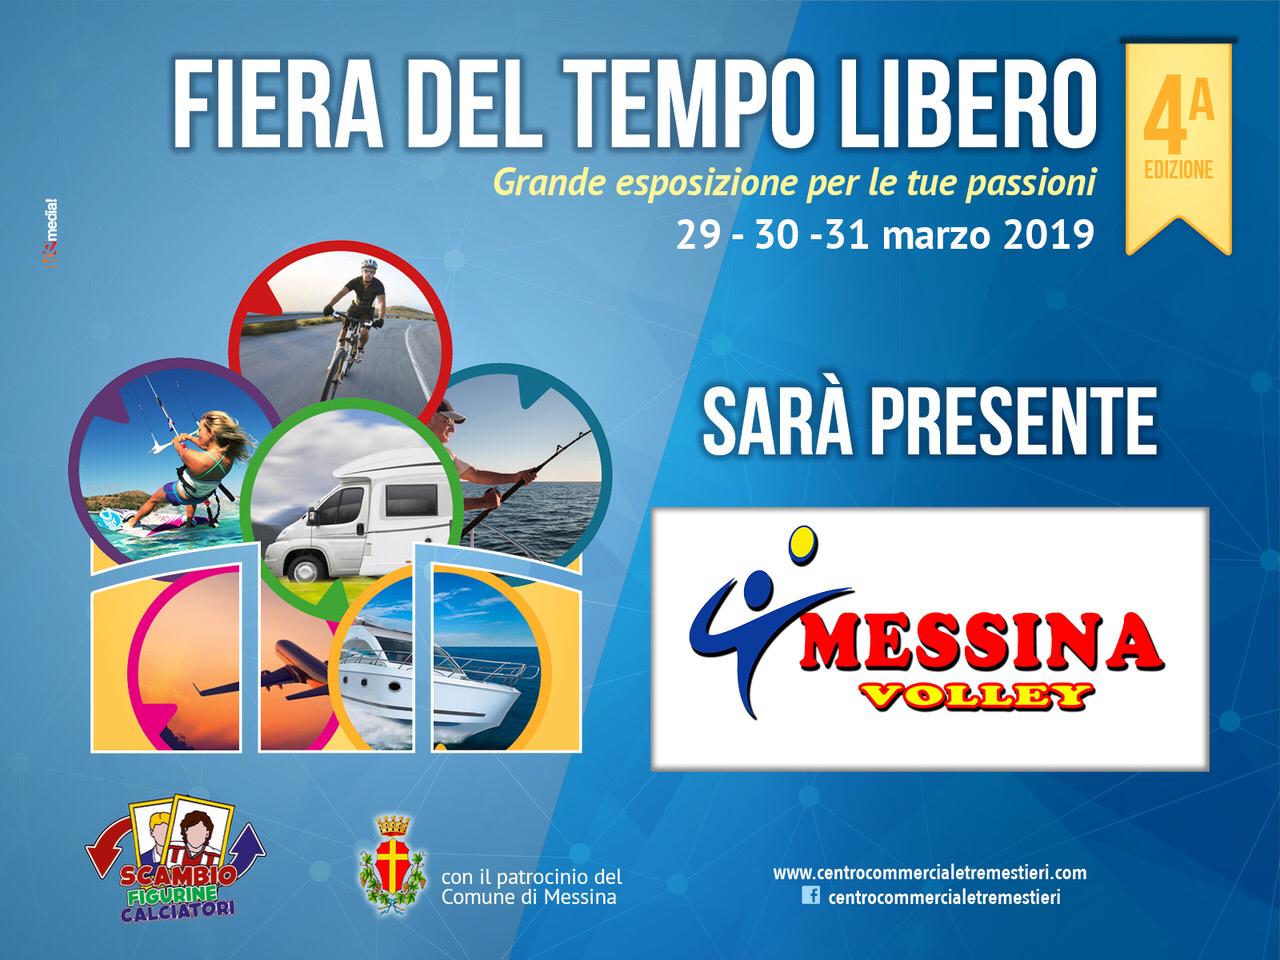 Il Messina Volley presente alla “Fiera del Tempo Libero” del Centro Commerciale Tremestieri